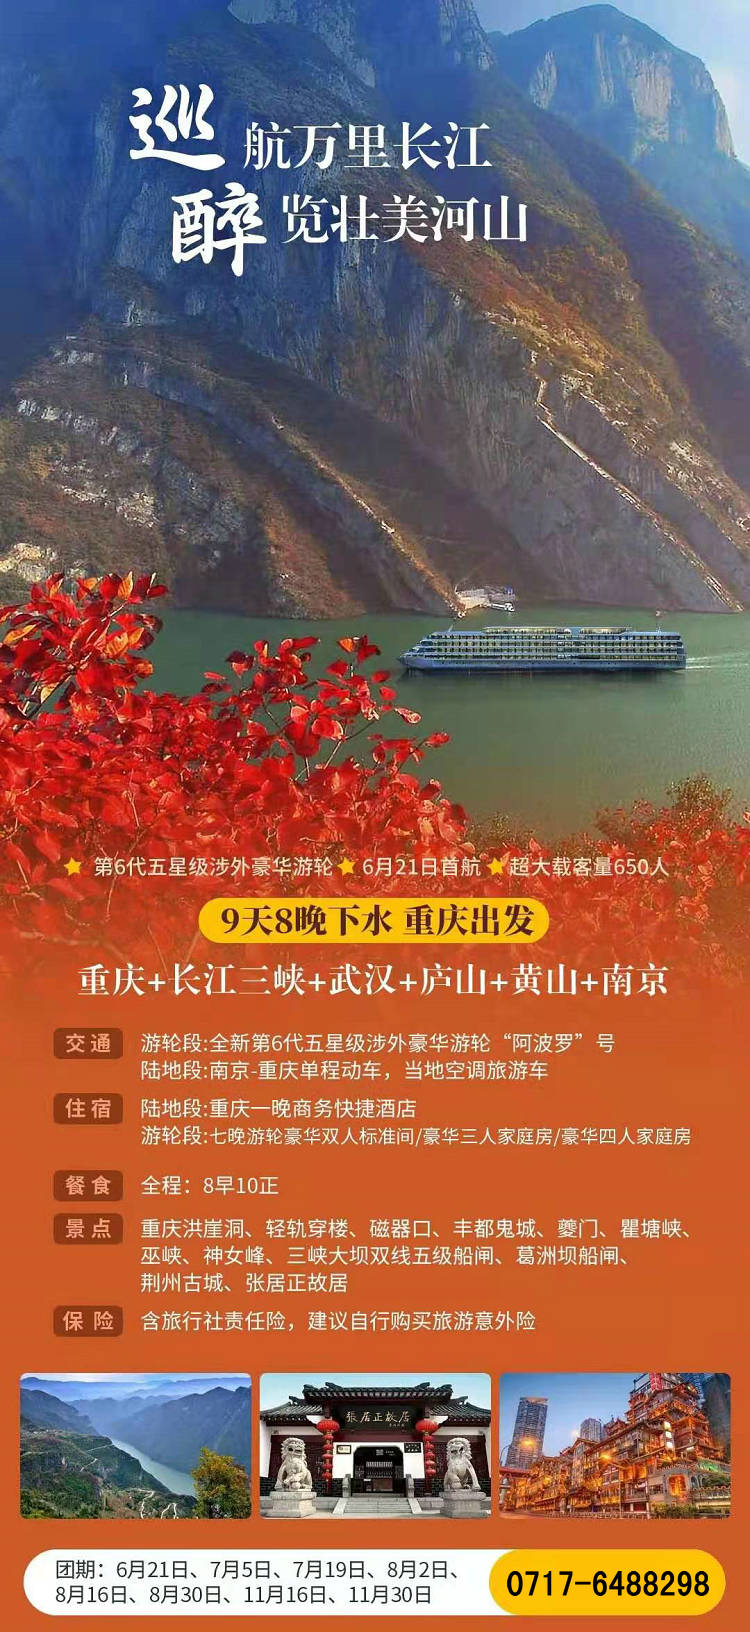 阿波罗长江万里行下水重庆-南京